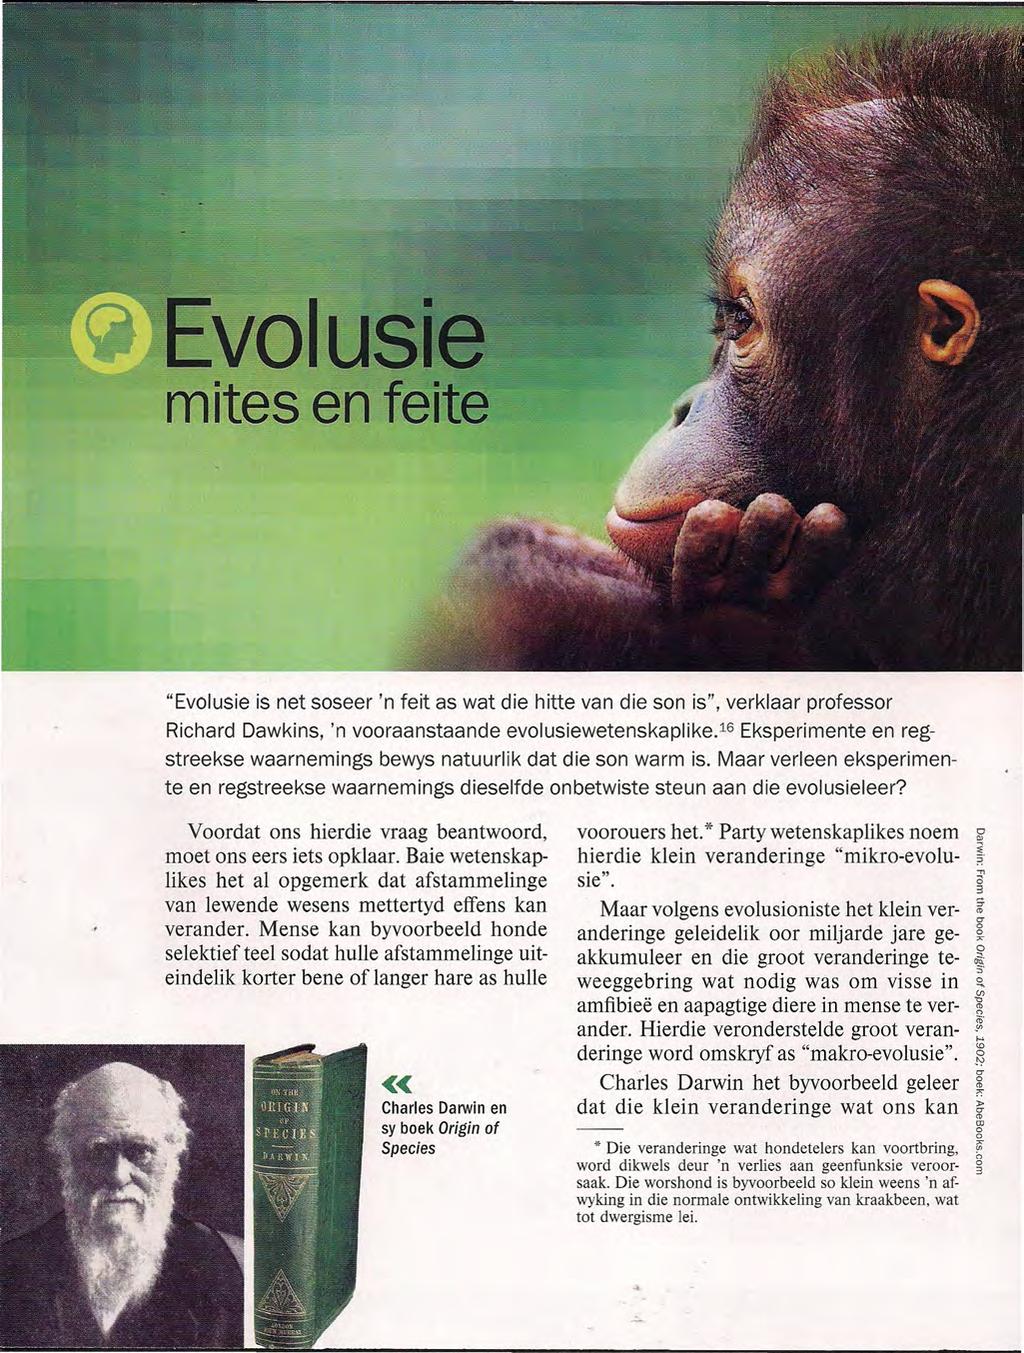 "Evolusie is net soseer 'n feit as wat die hitte van die son is", verklaar professor Richard Dawkins, 'n vooraanstaande evotusiewetenskaplike.